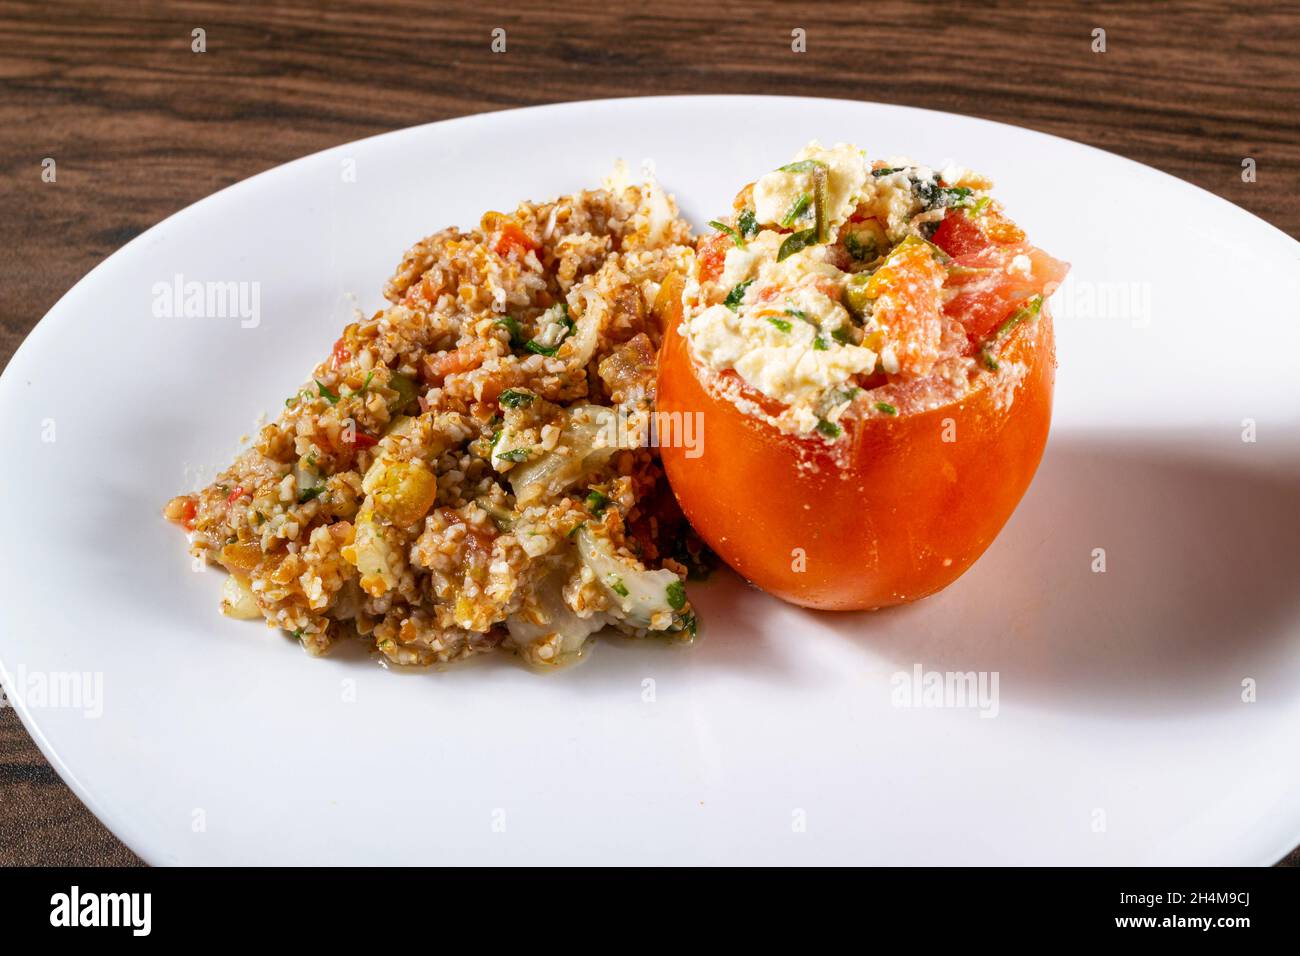 Salade de tabouleh aux tomates farcies.Plats végétariens.Plat traditionnel moyen-oriental ou arabe.Vue de dessus Banque D'Images